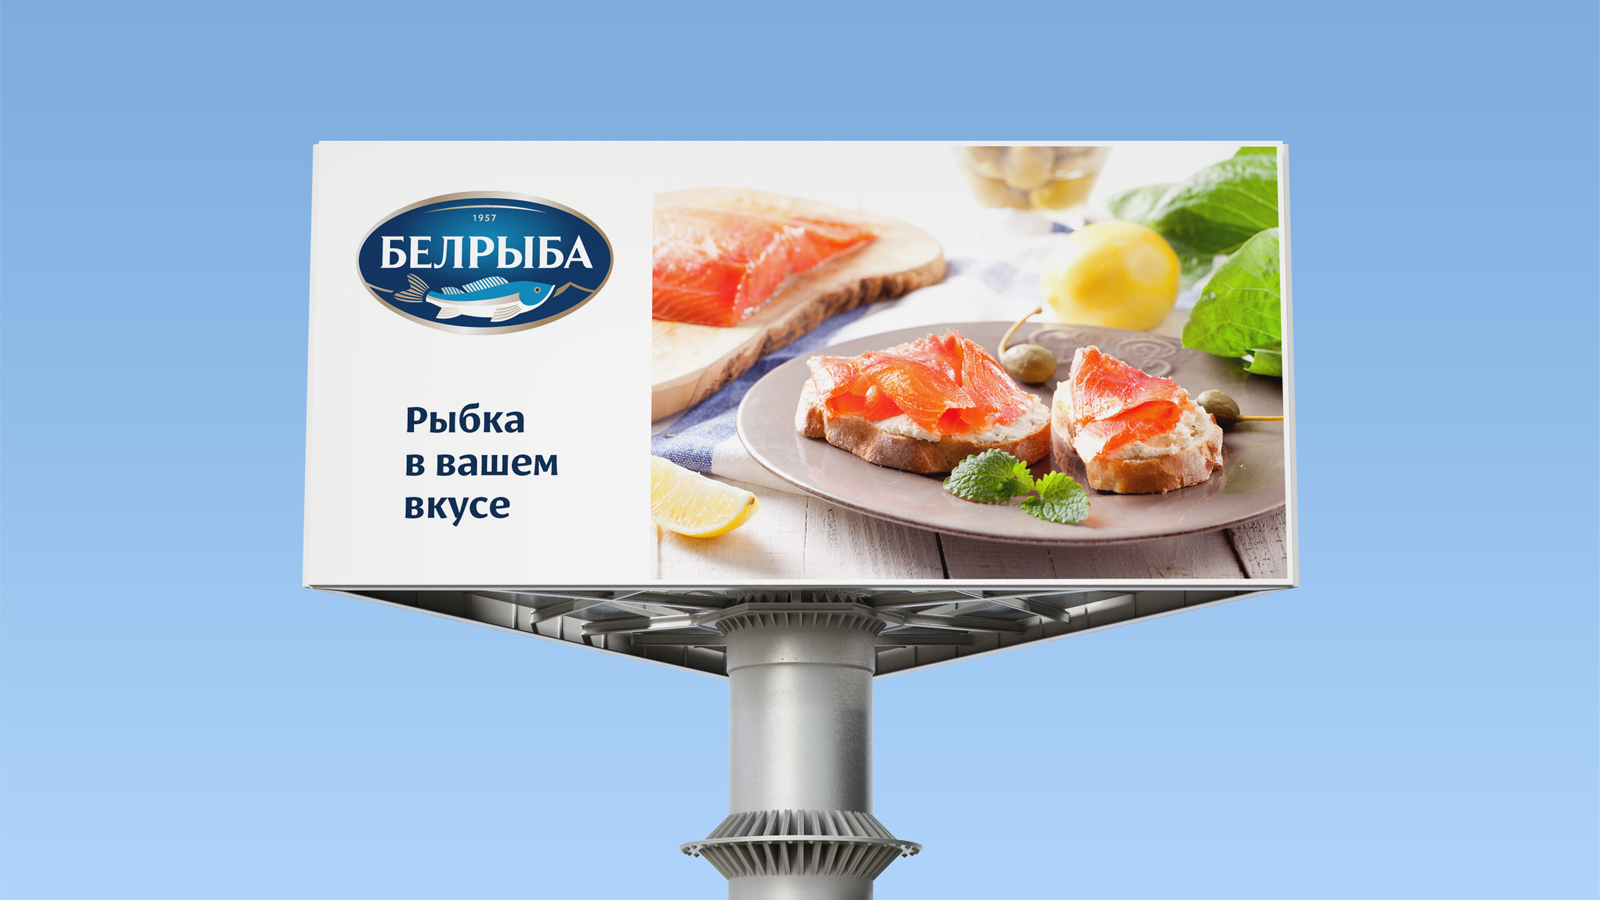 Дизайн рекламы, профессиональная фотосъемка, фудстайлинг и создание макетов наружной рекламы для белорусского бренда рыбы «Белрыба».